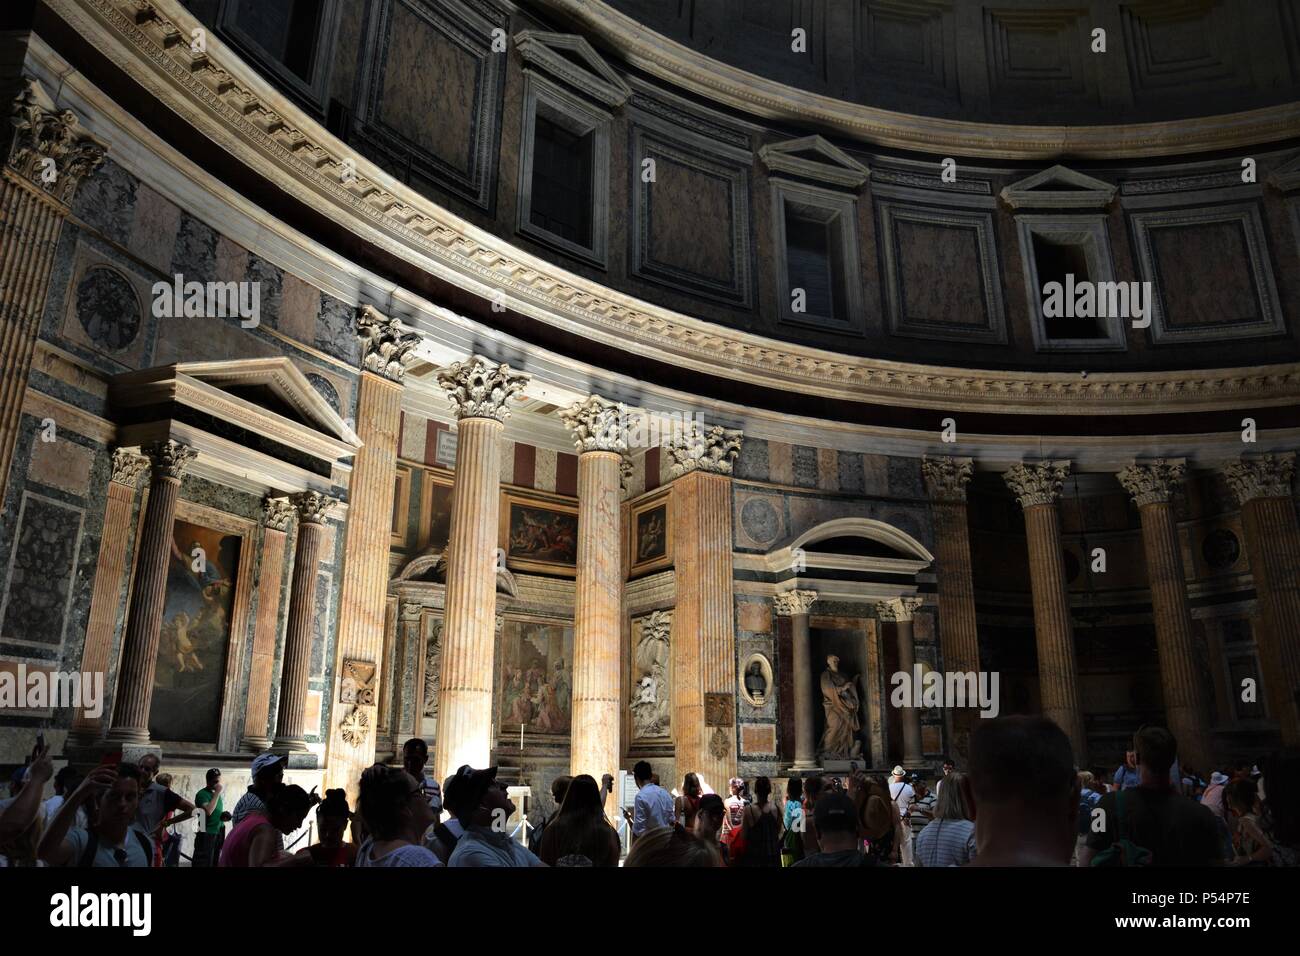 Camminando per le strade di Roma, fasci di luce illuminano il Pantheon Foto  stock - Alamy